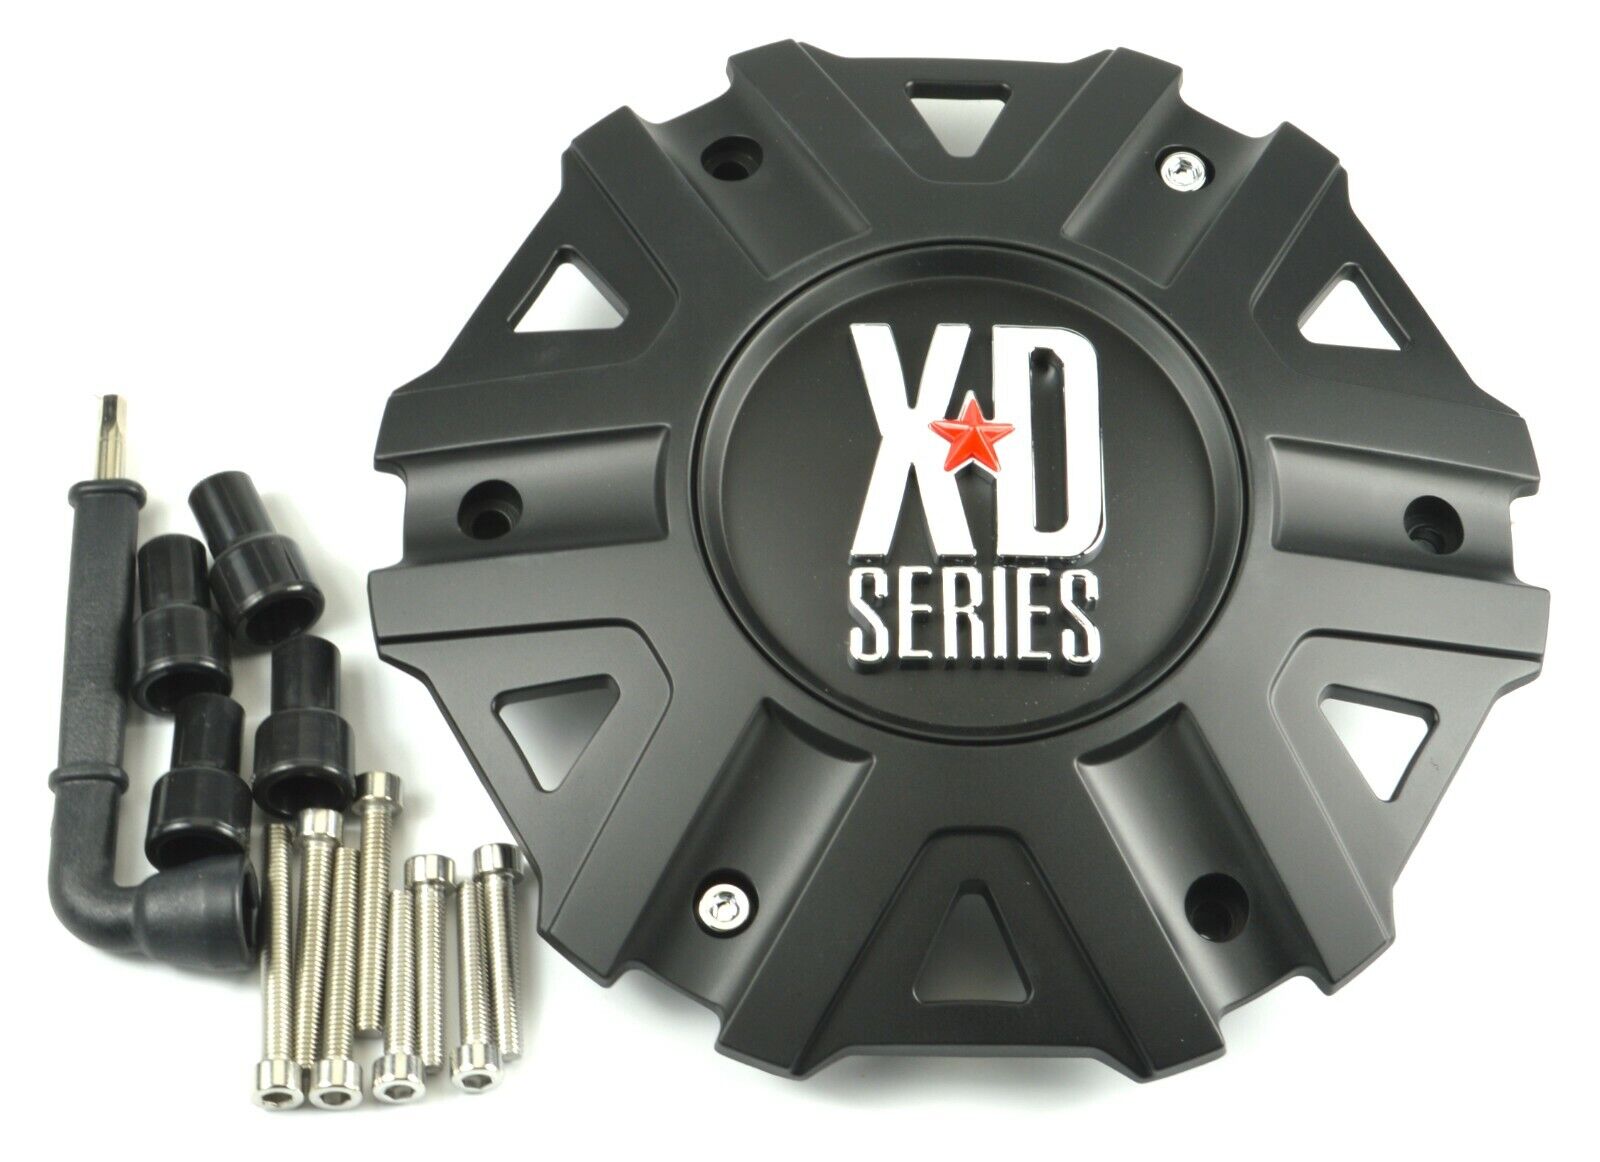 NEW KMC XD Series XD822 Monster II Wheel Center Cap Satin / Matte Black M-959SB